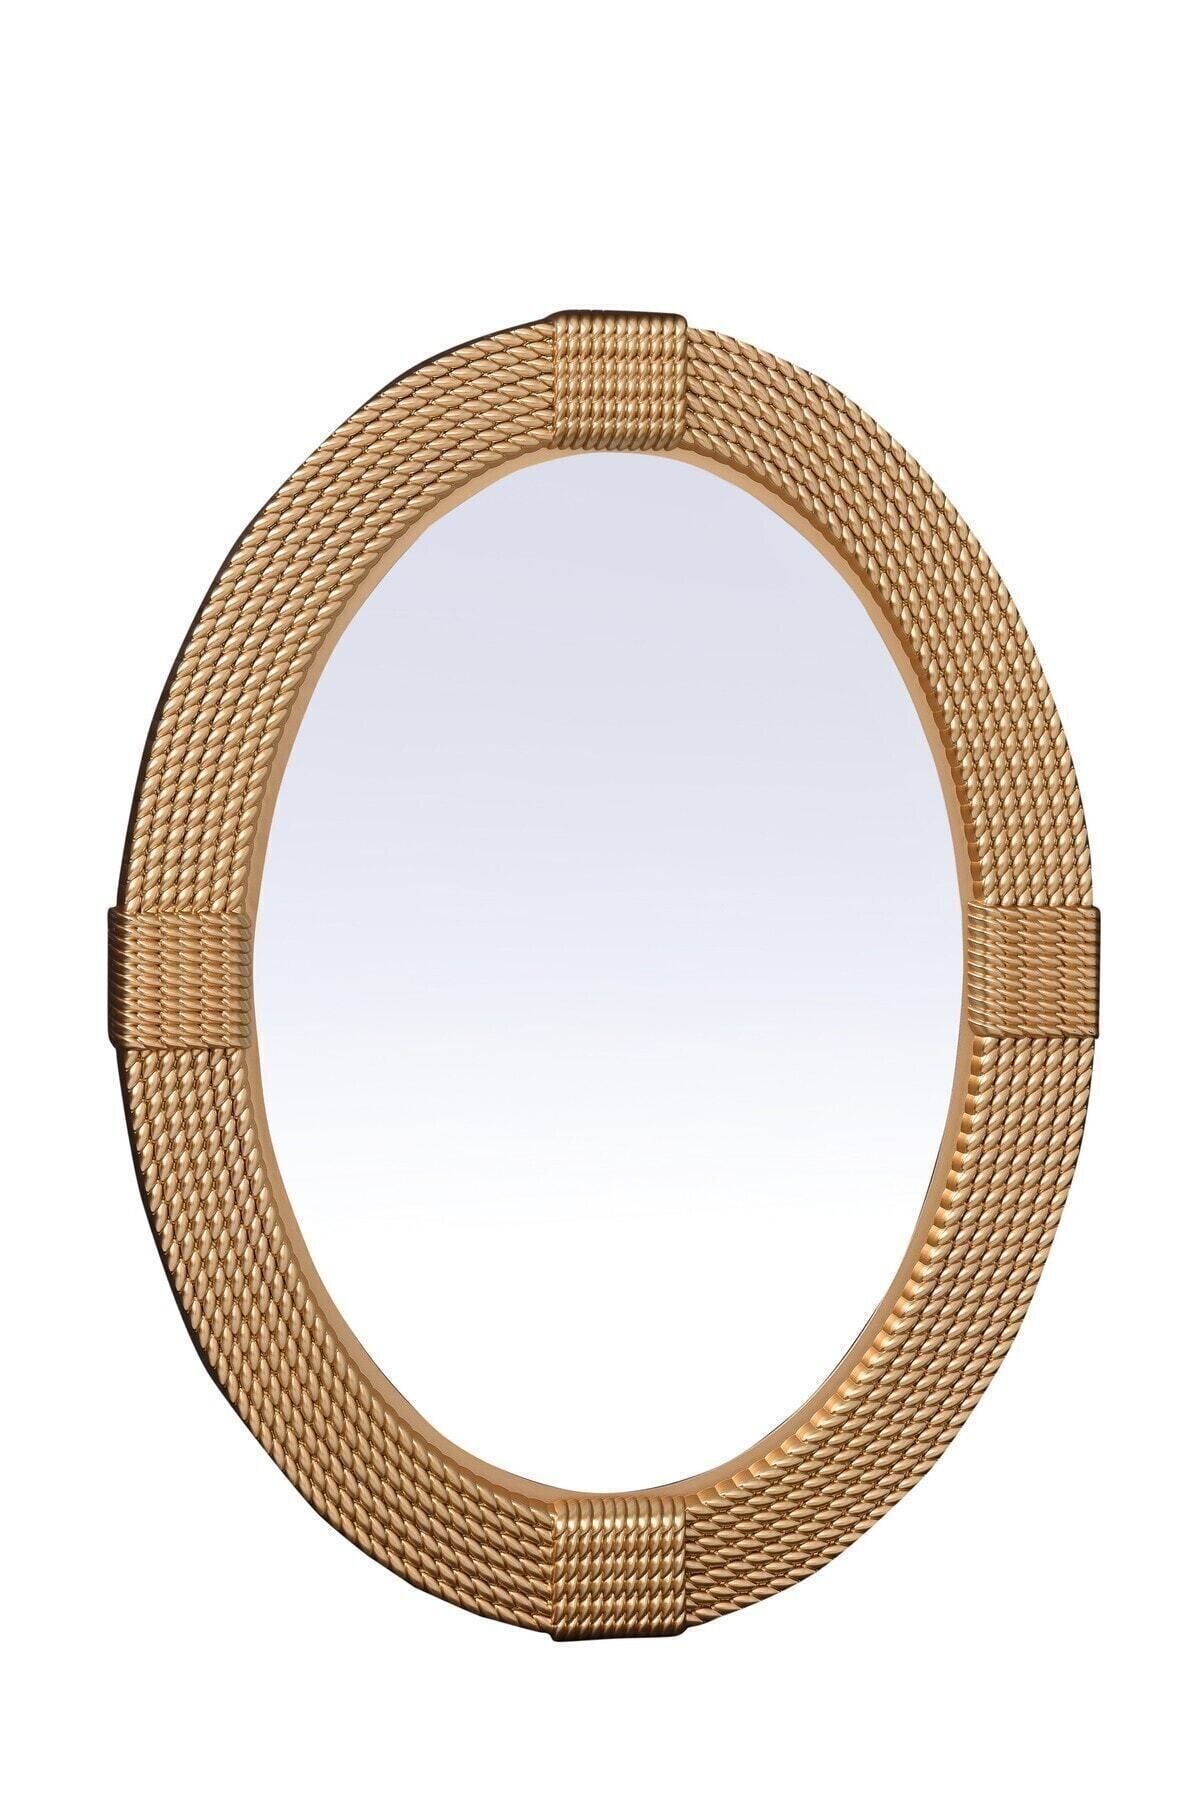 Tuğbasan Dekoratif Örgü Oval Ayna 979 Altın Fma08403